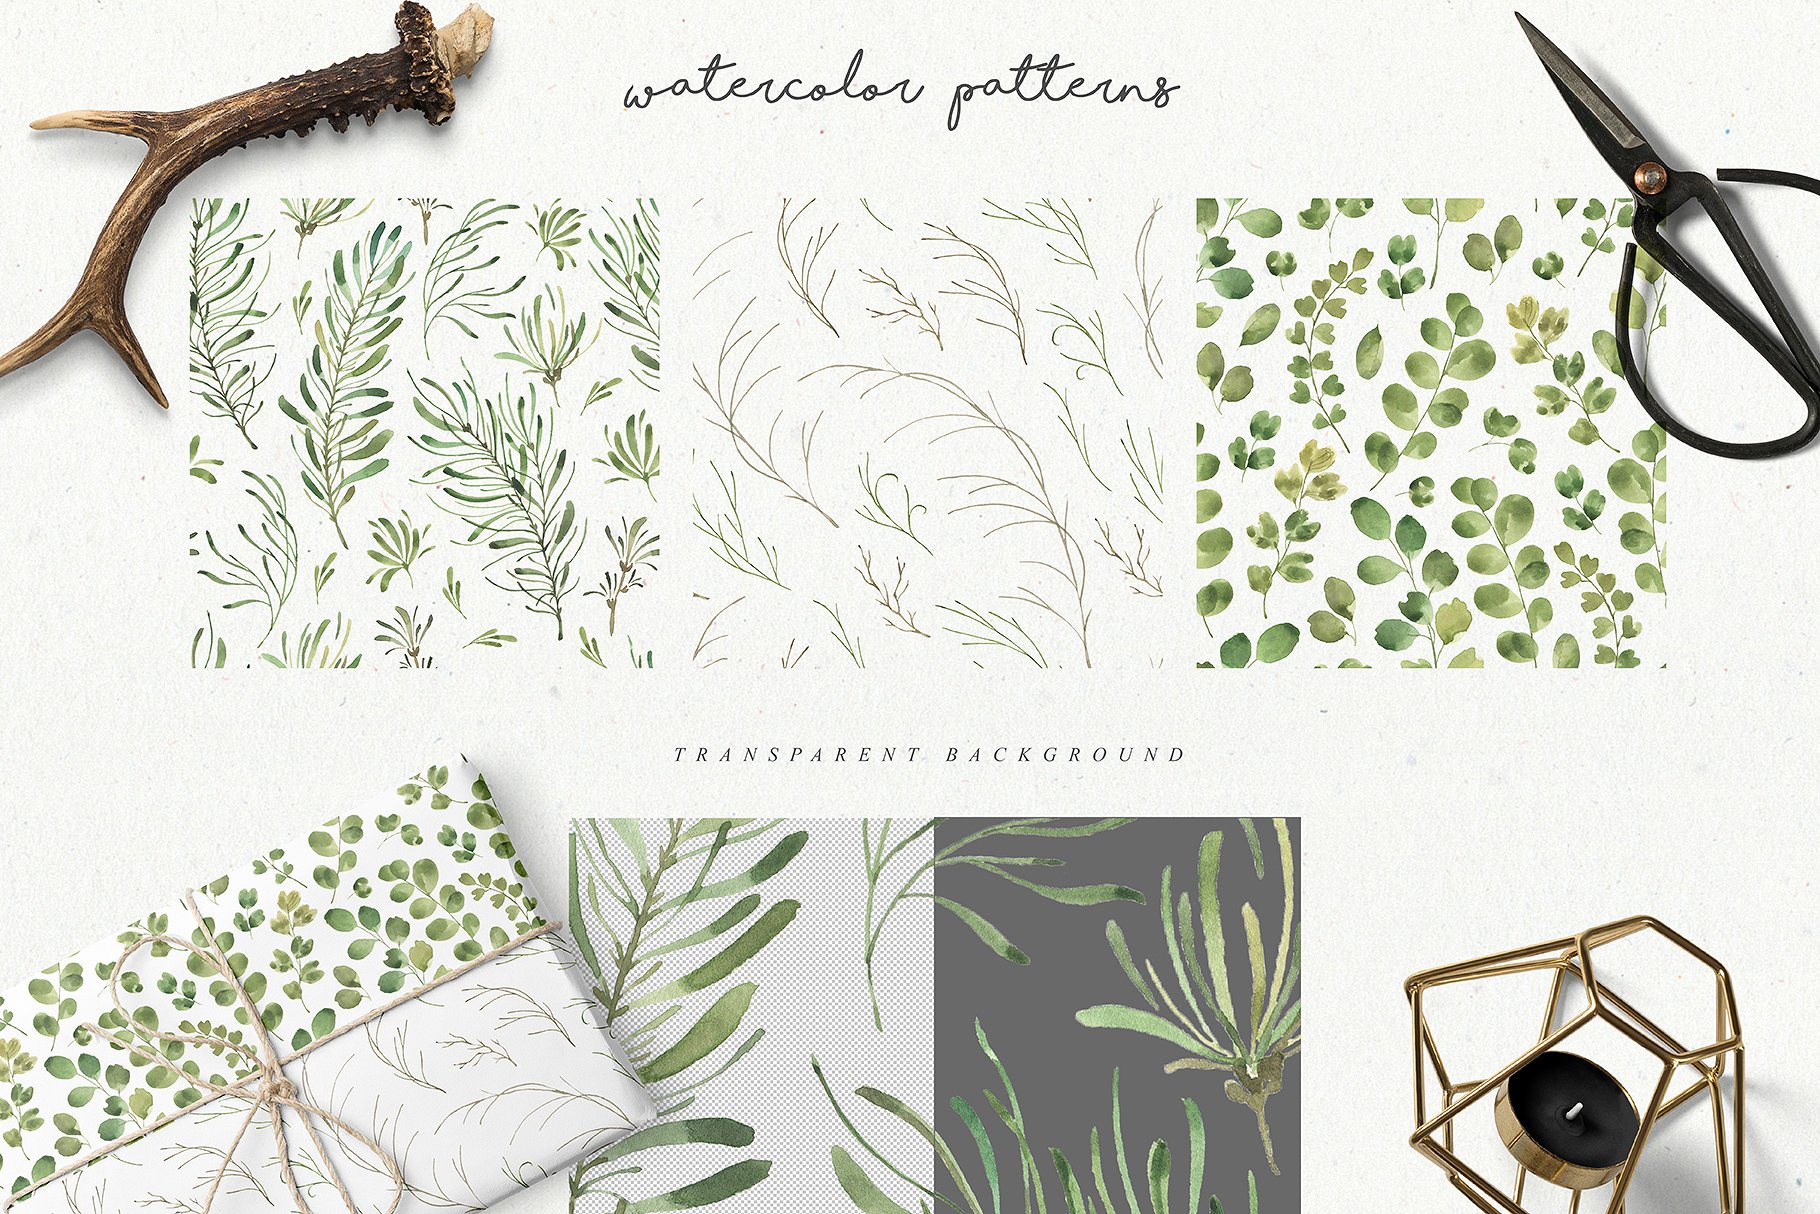 水彩树叶元素、相框、纹理素材包 Leafy Leaf Collection插图(6)